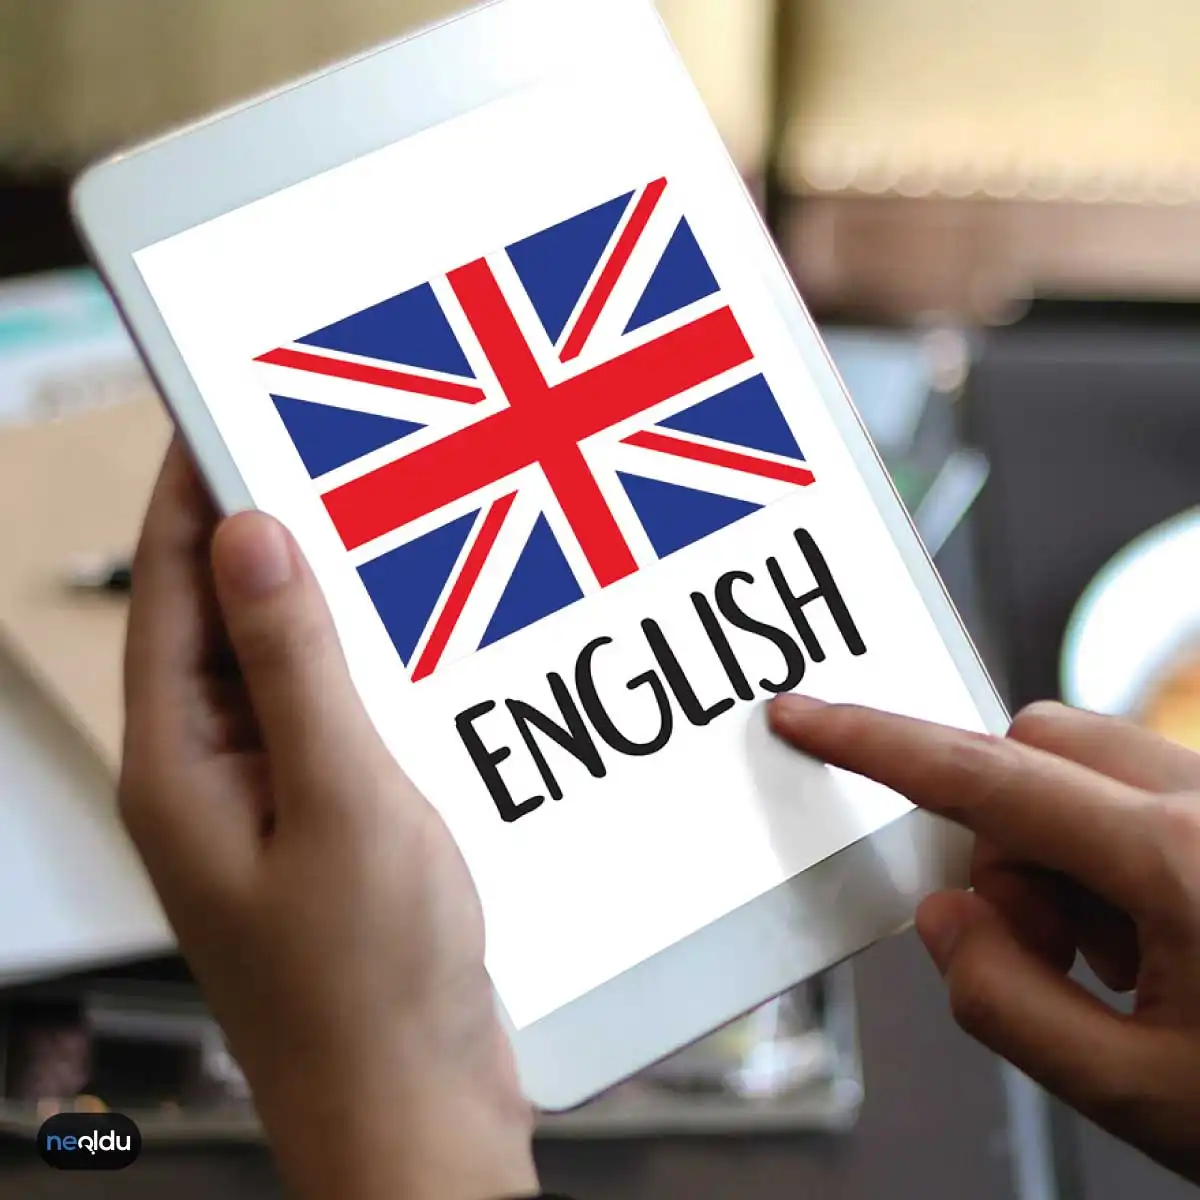 İngiliz Dili Hakkında Bilgiler